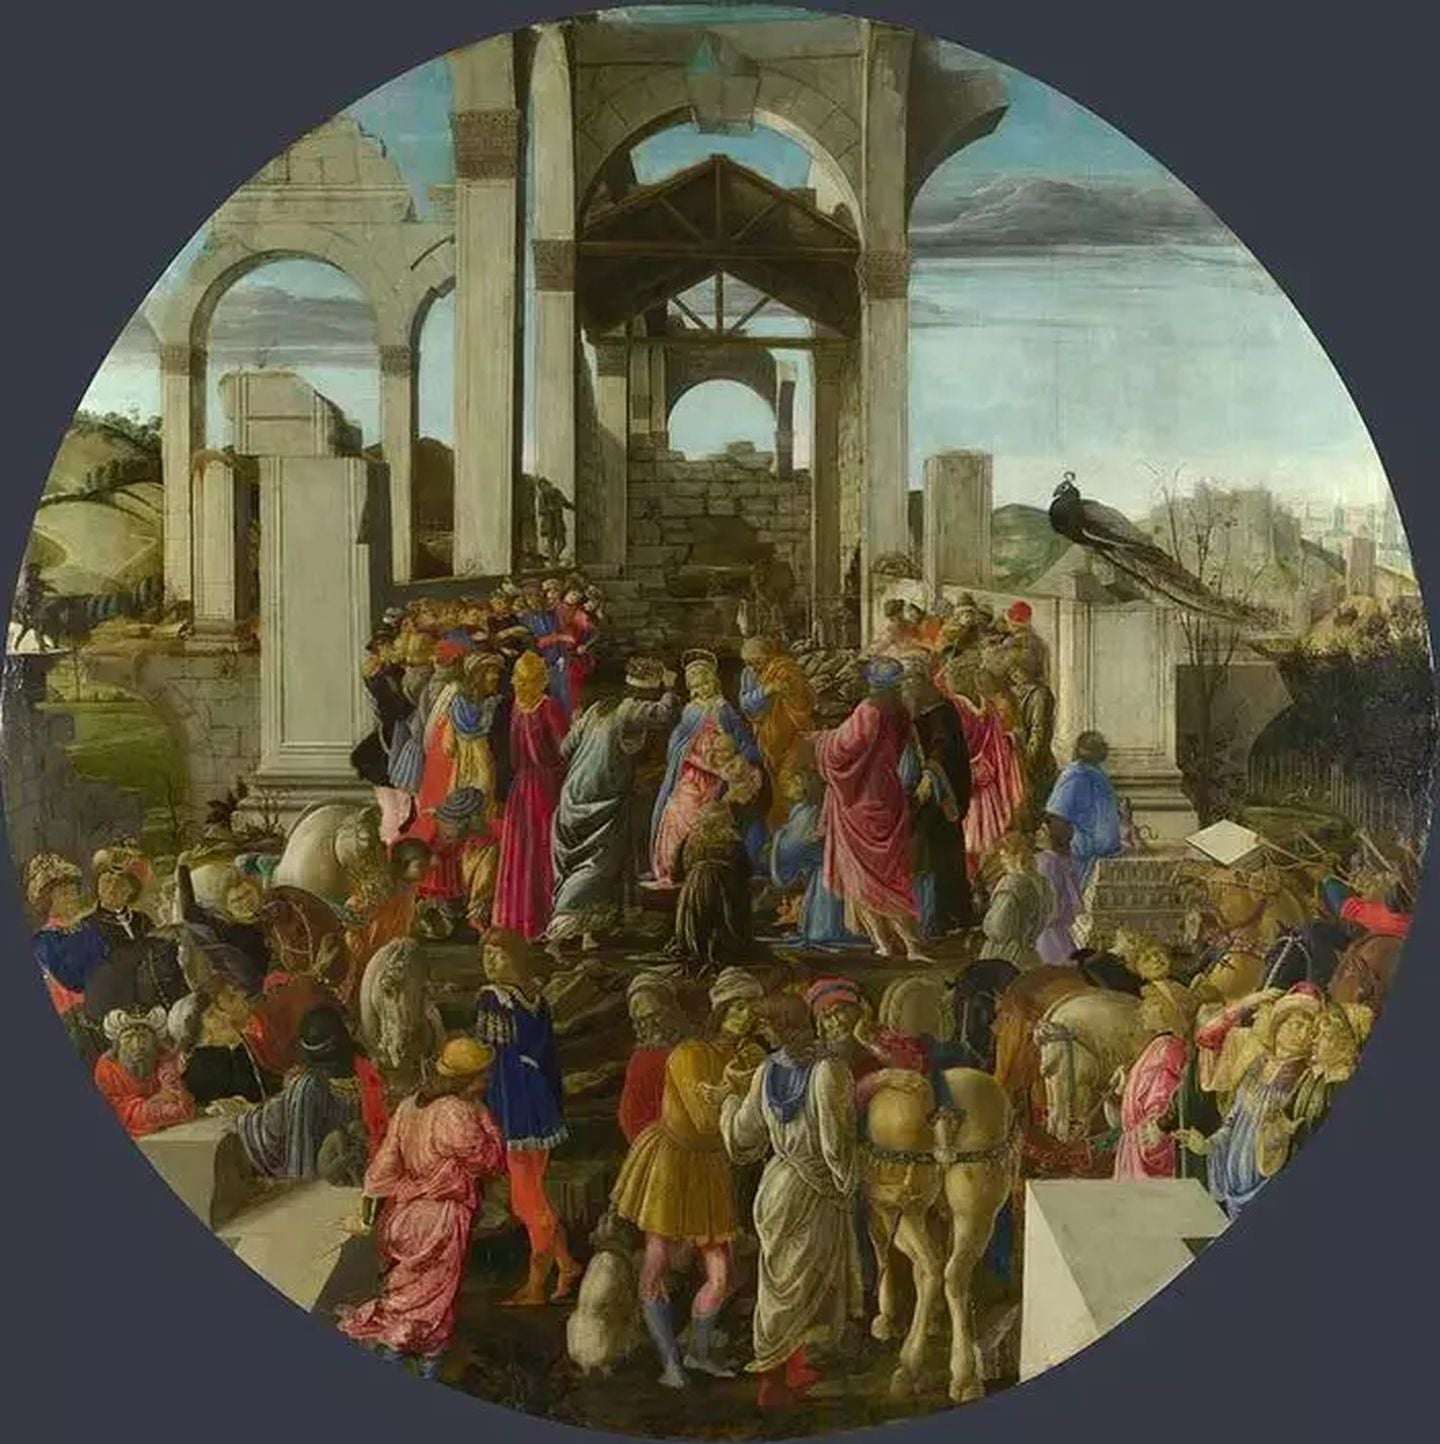 L'adoration des rois - Sandro Botticelli